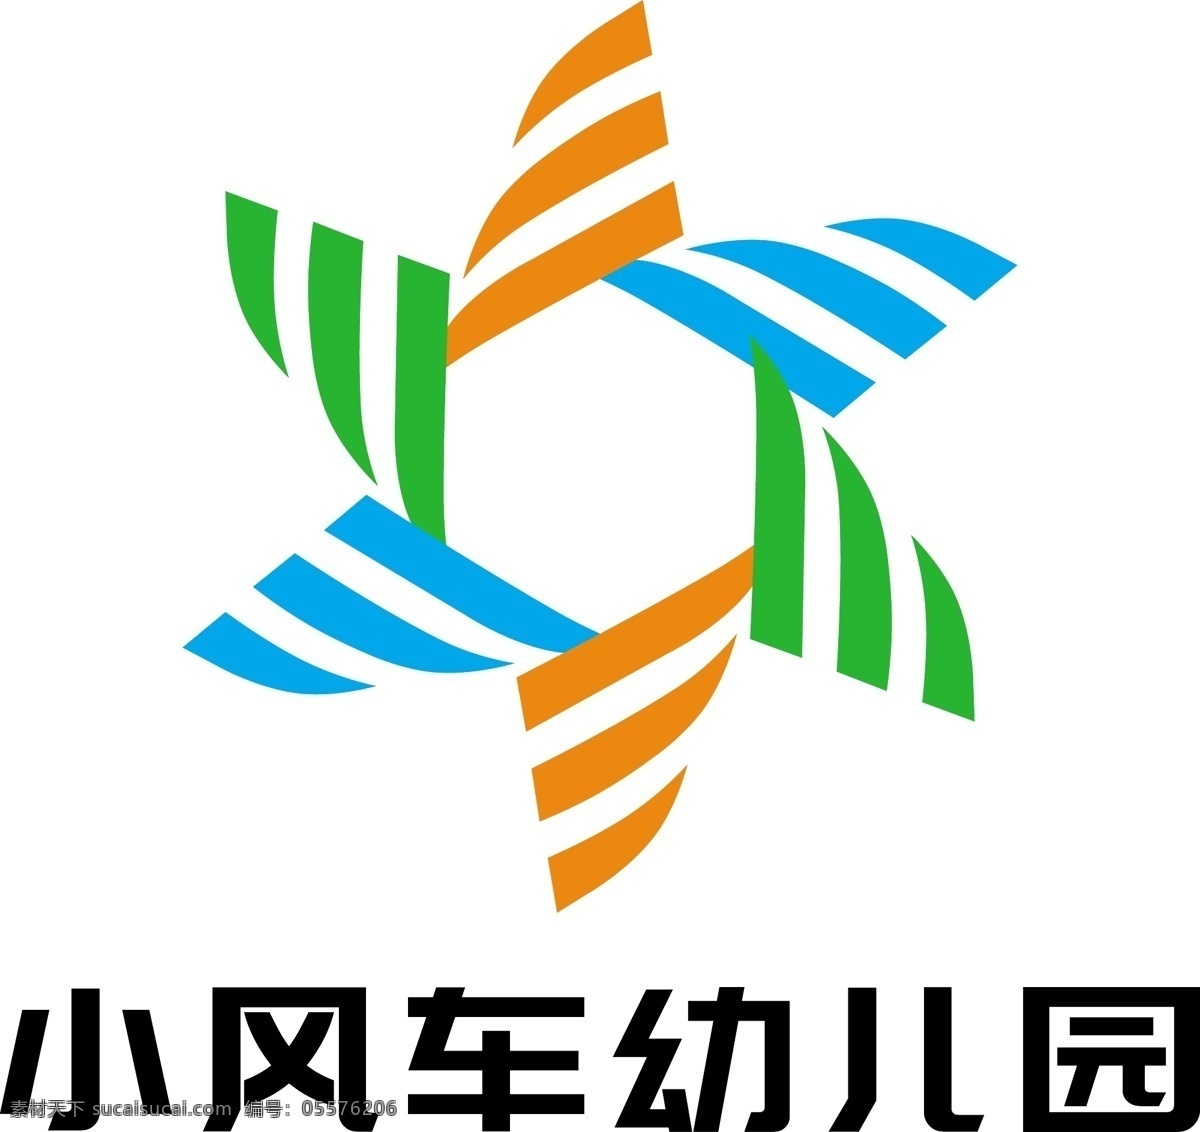 小 风车 幼儿园 logo 教育 培训logo 标志设计